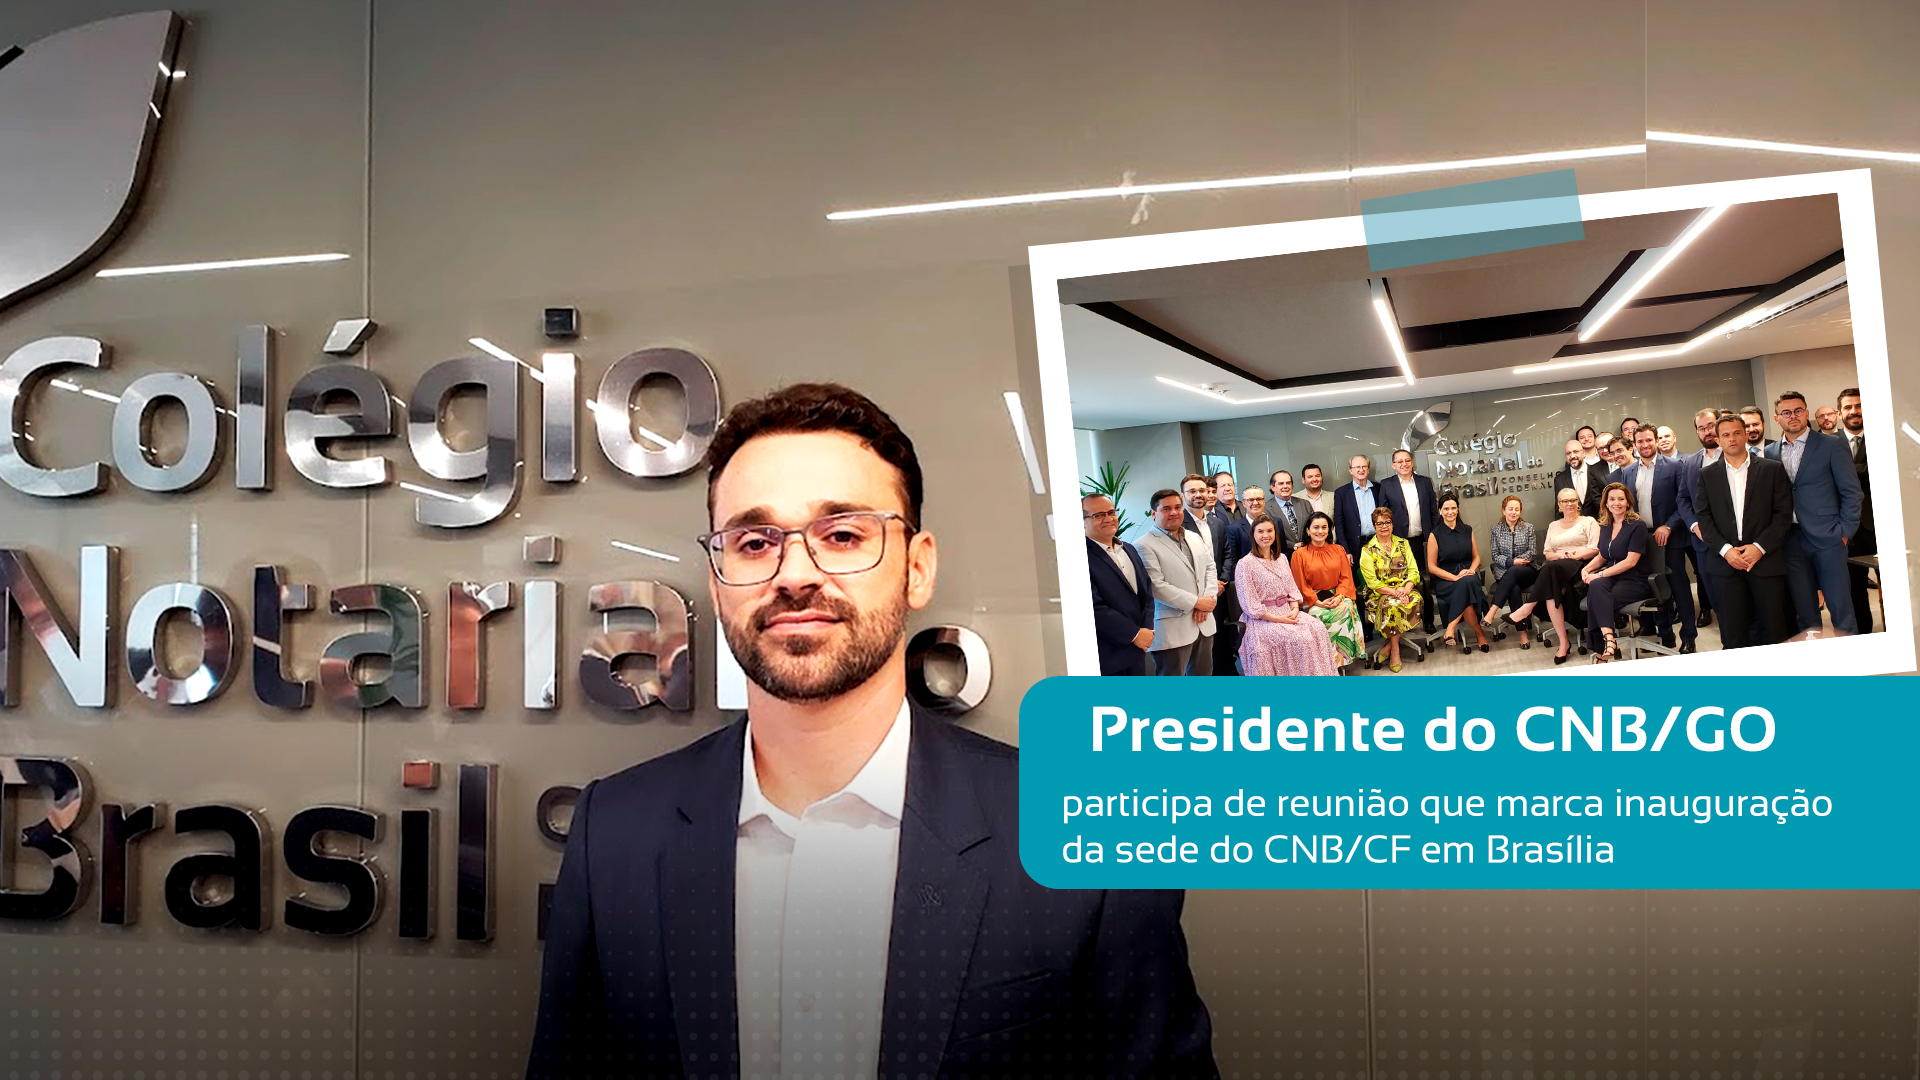 Presidente Do CNB/GO, Alex Valadares Braga, Participa De Reunião Que Marca Inauguração Da Sede Do CNB/CF Em Brasília